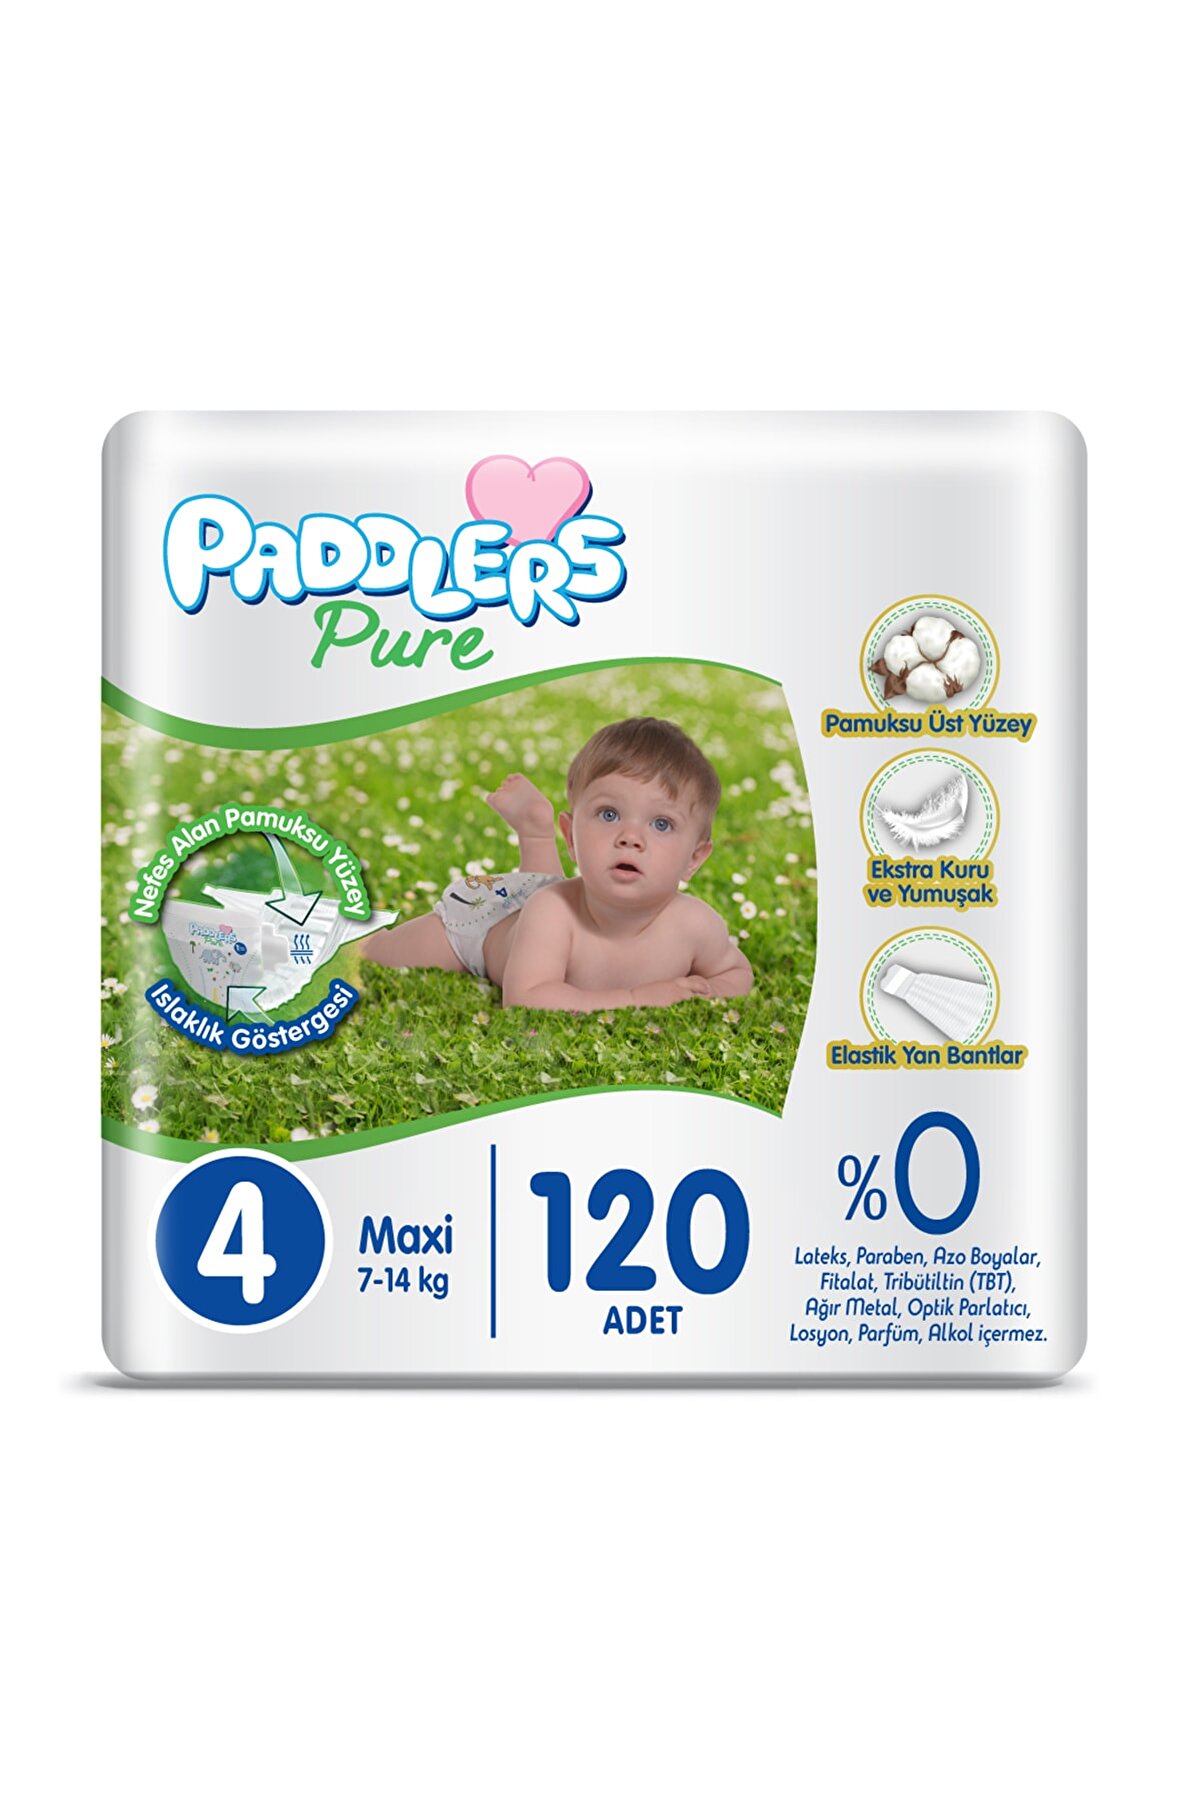 Paddlers Pure Bebek Bezi 4 Numara Maxi 120 Adet 7-14 kg Süper Fırsat Paketi